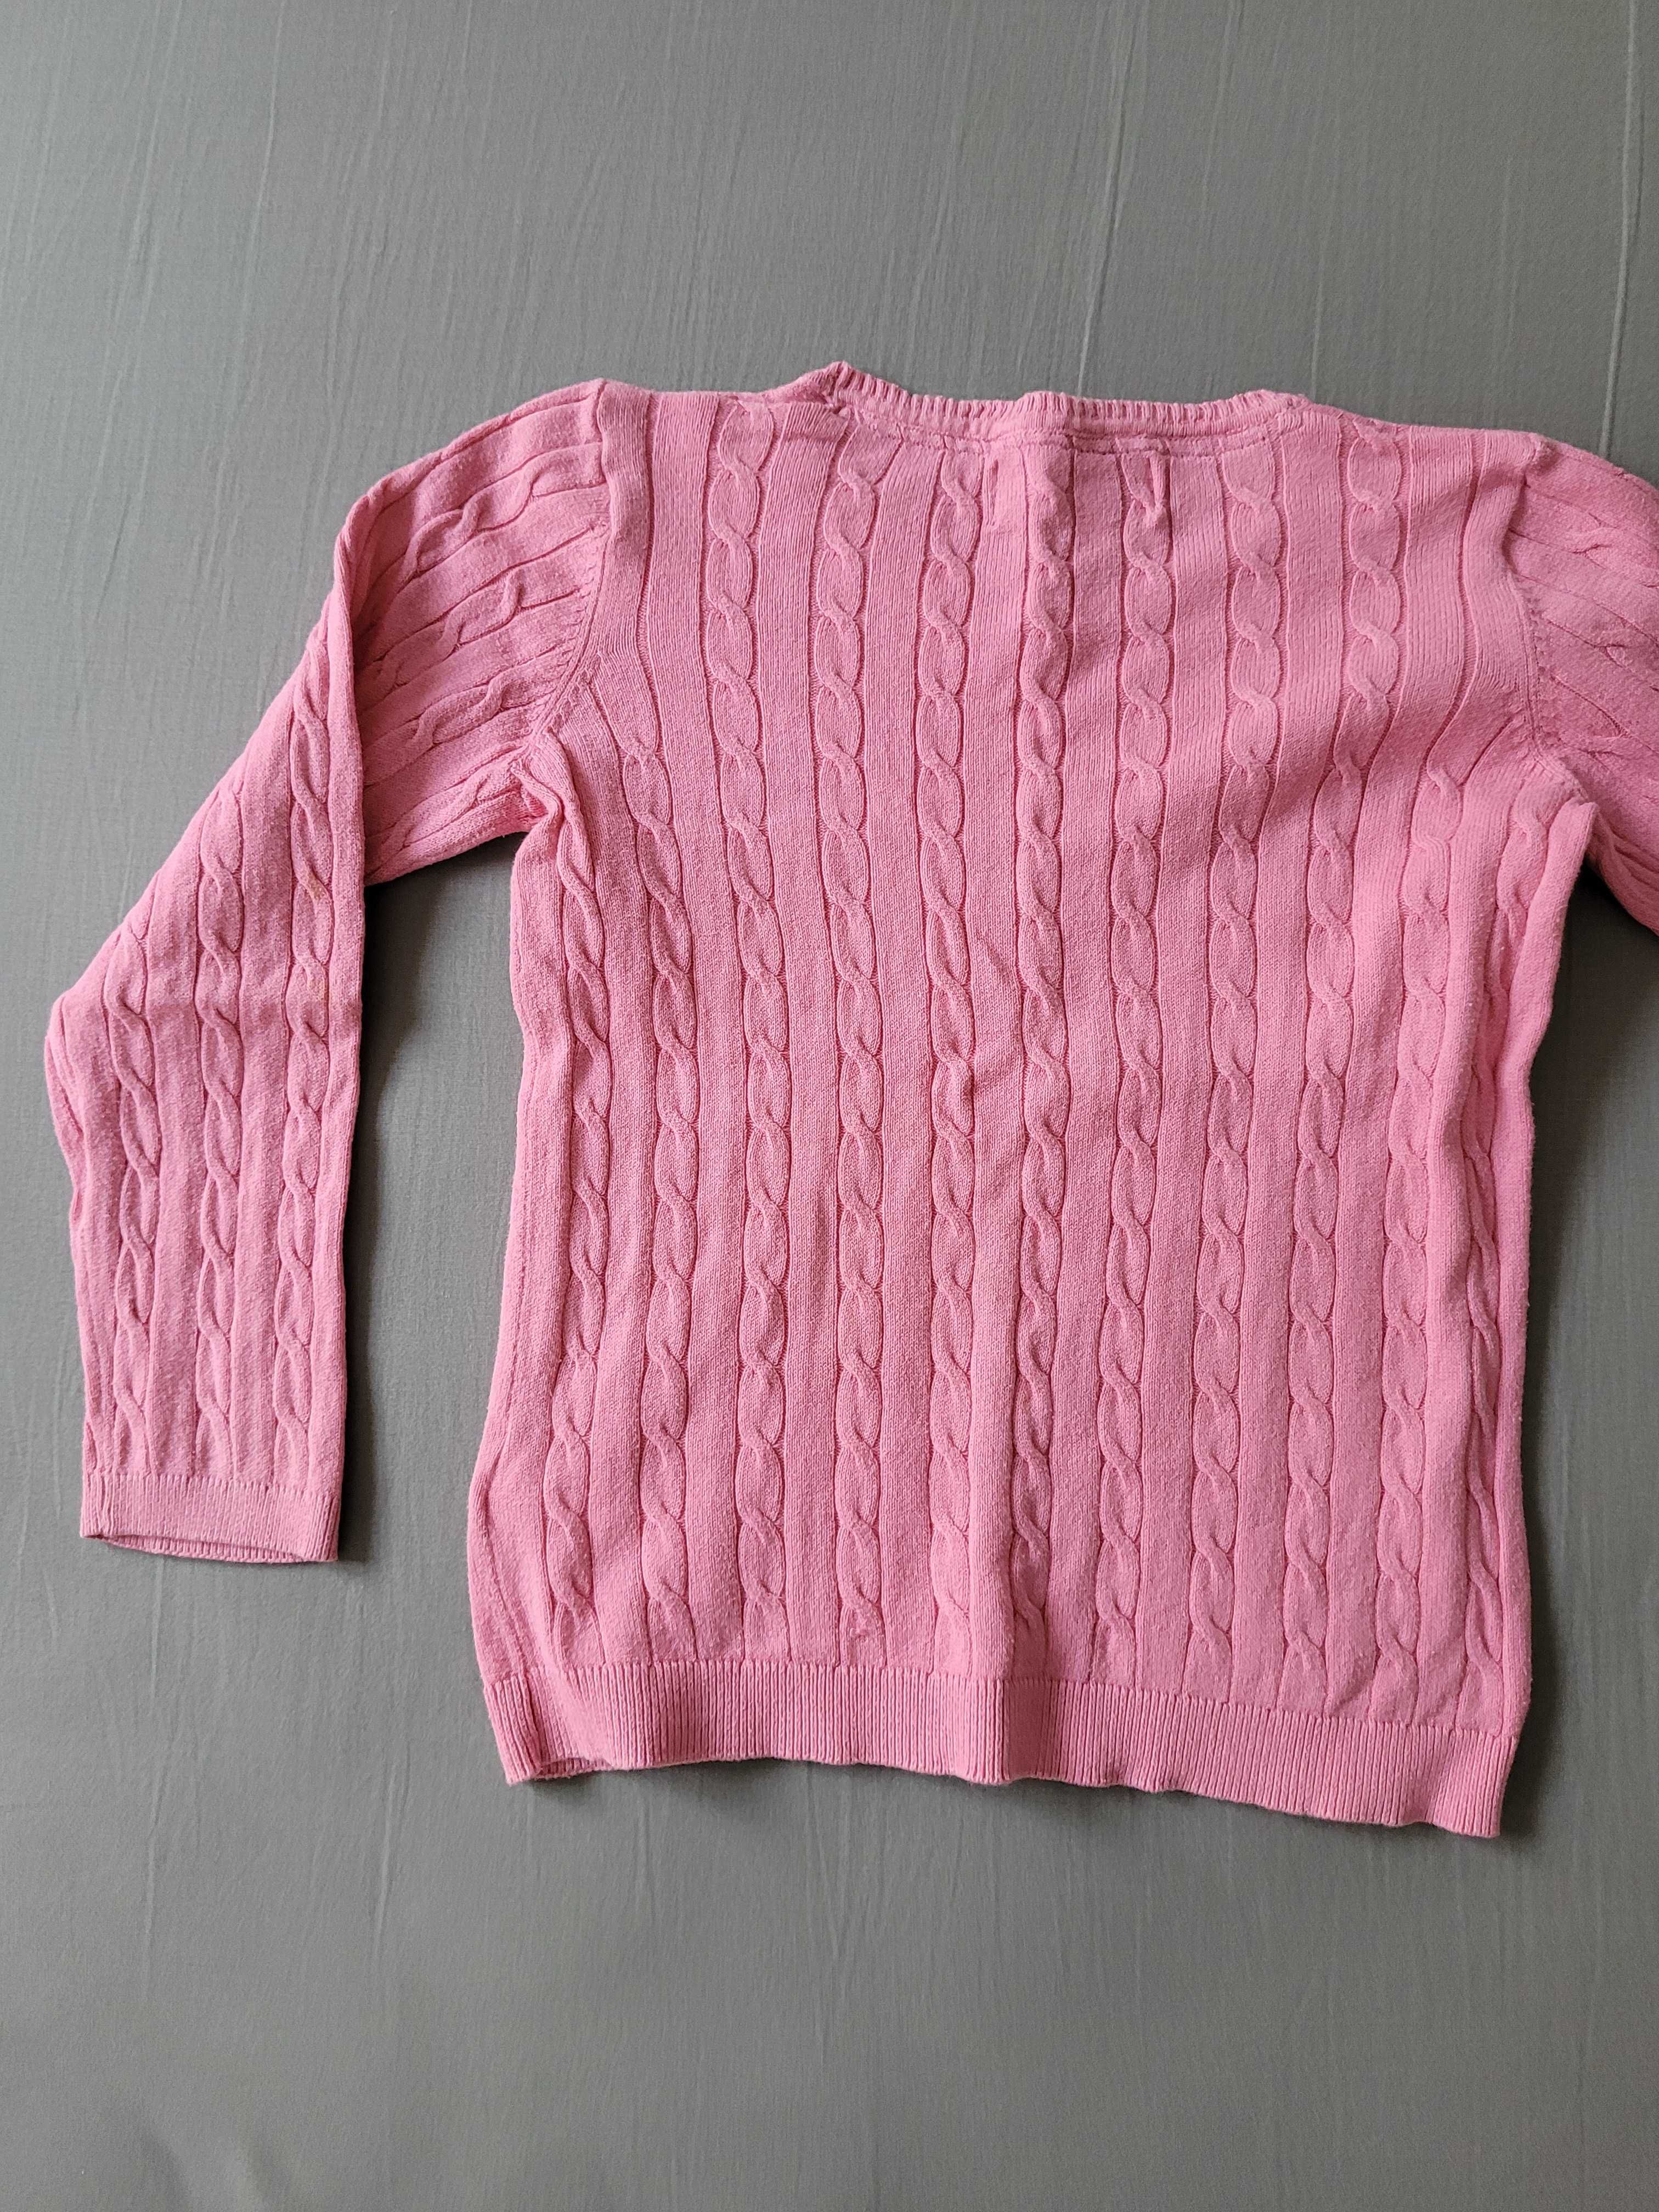 Sweterek dziewczęcy różowy długi rękaw na 122-128cm KappAhl super